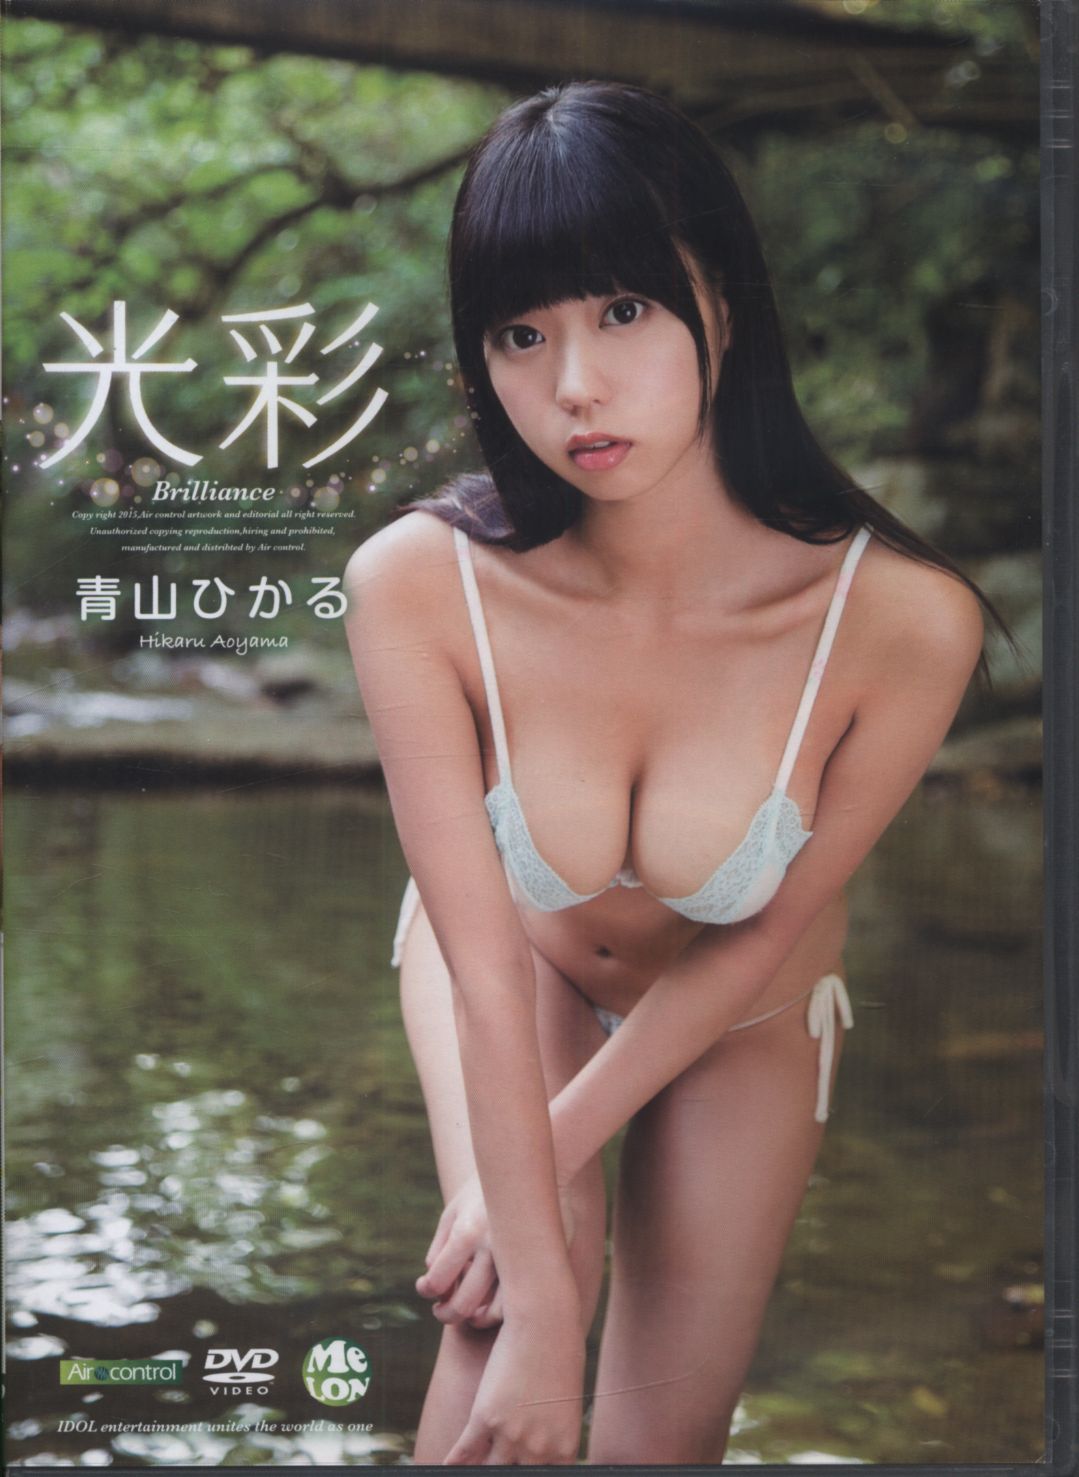 Hikaru aoyama nude